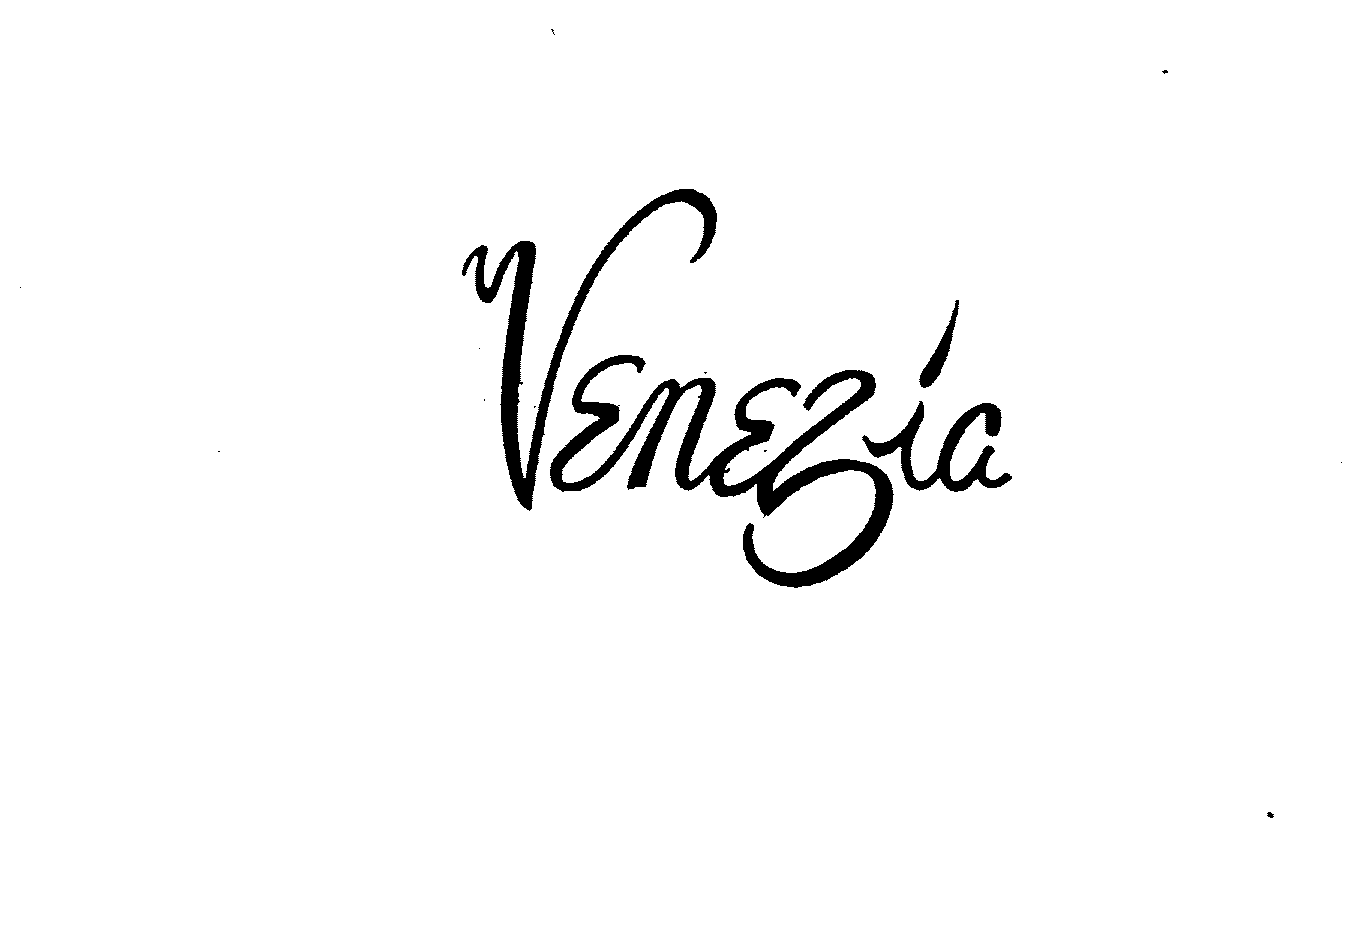 Trademark Logo VENEZIA